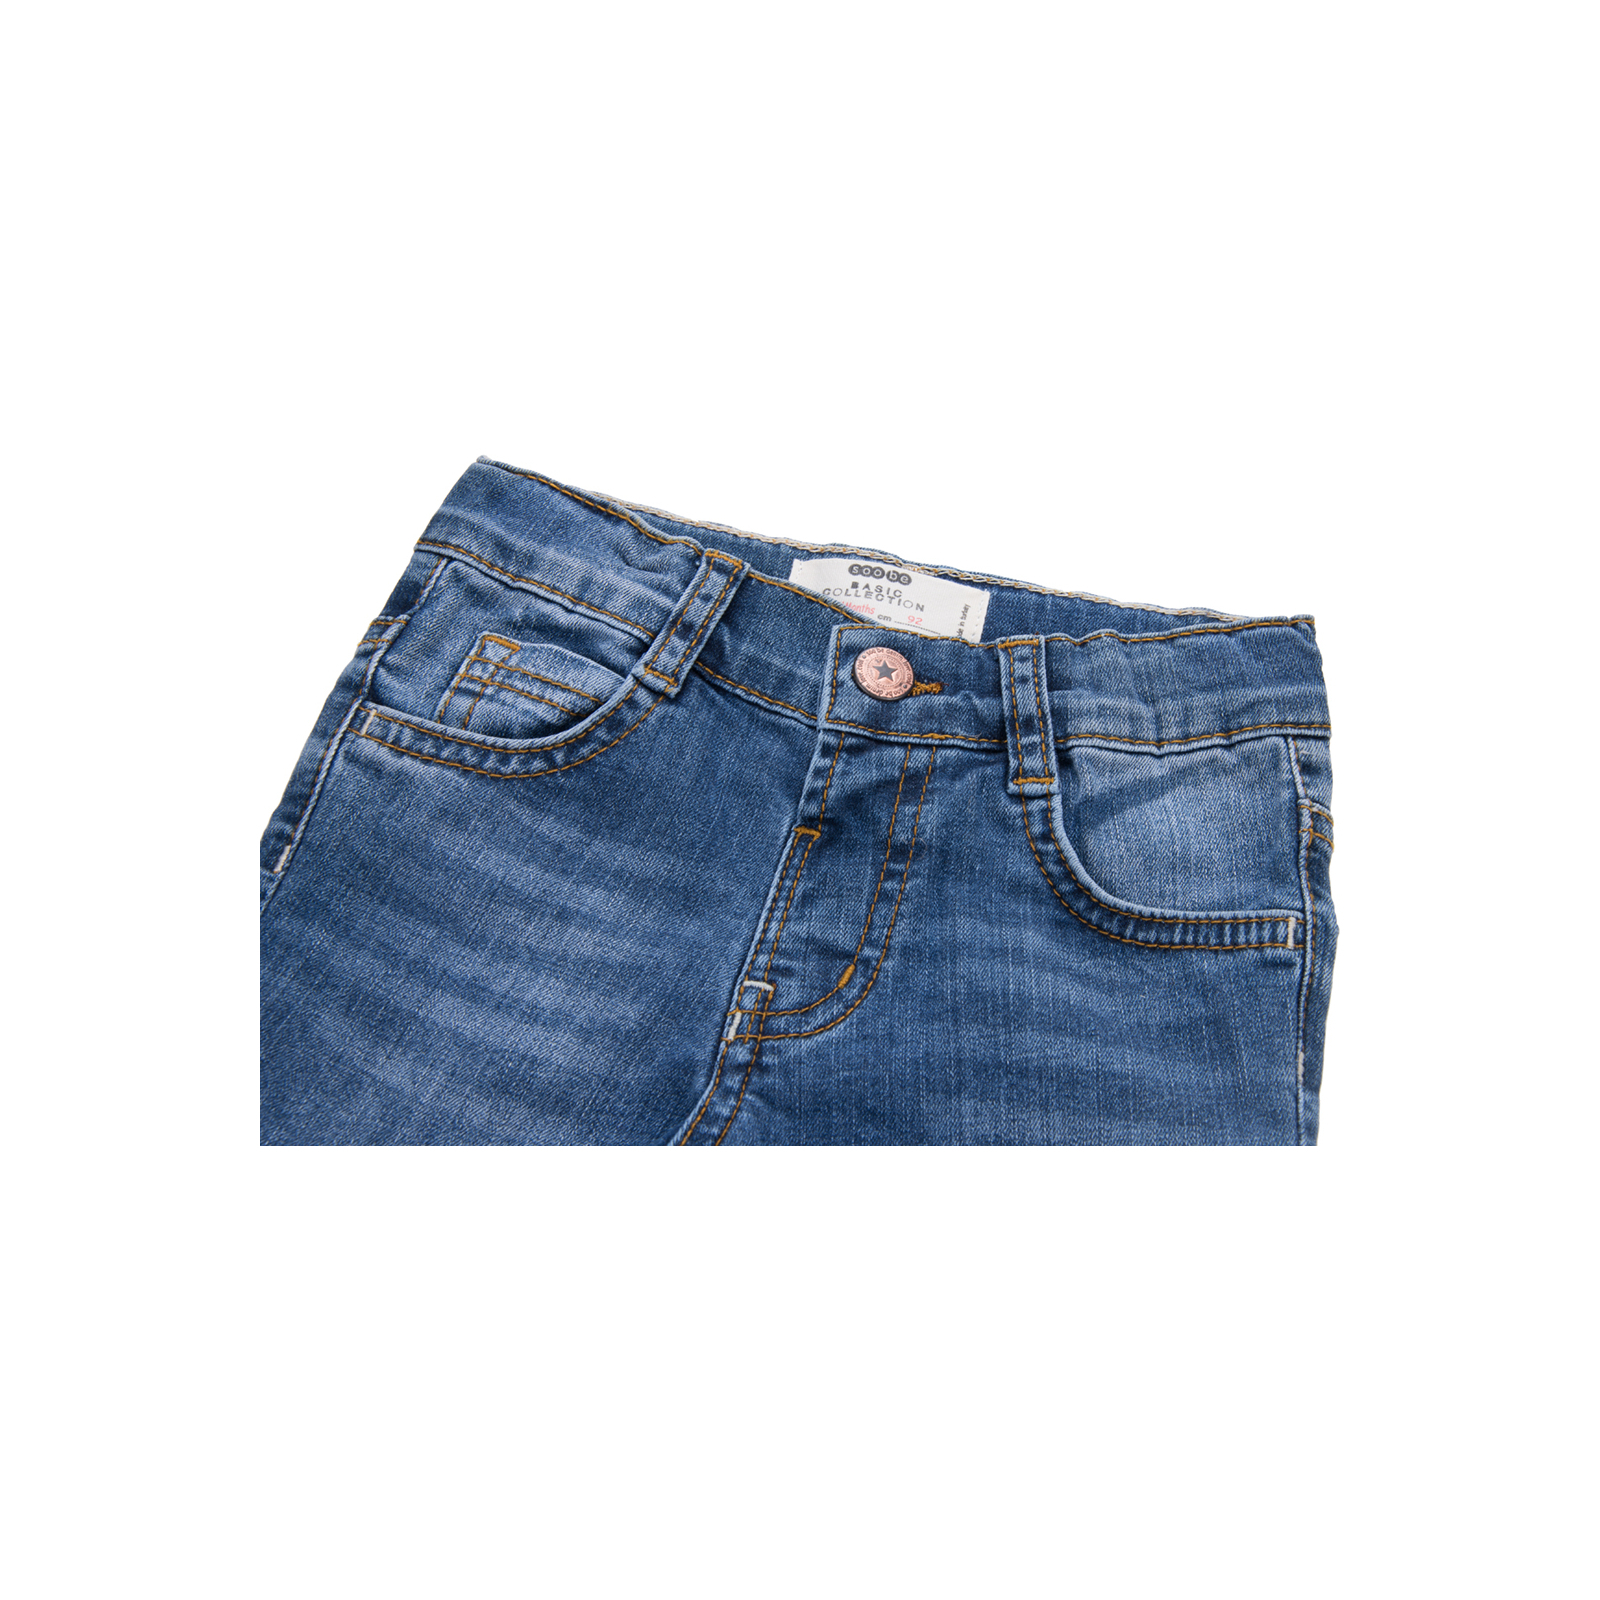 Джинсы Breeze синие (15YECPAN371-74B-jeans) изображение 3